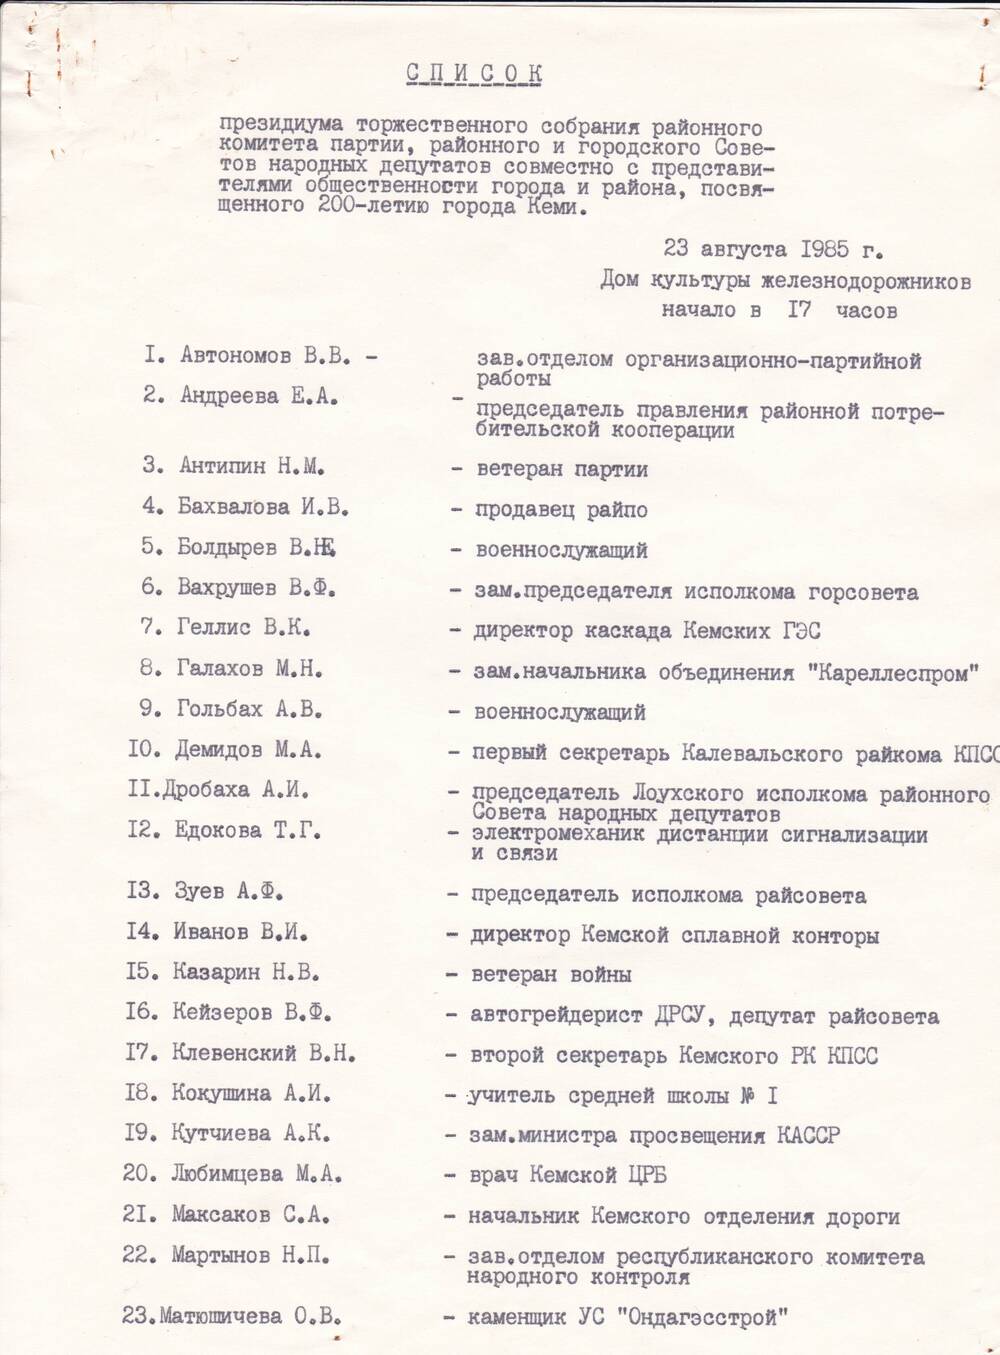 Документ Список президиума торжественного собрания